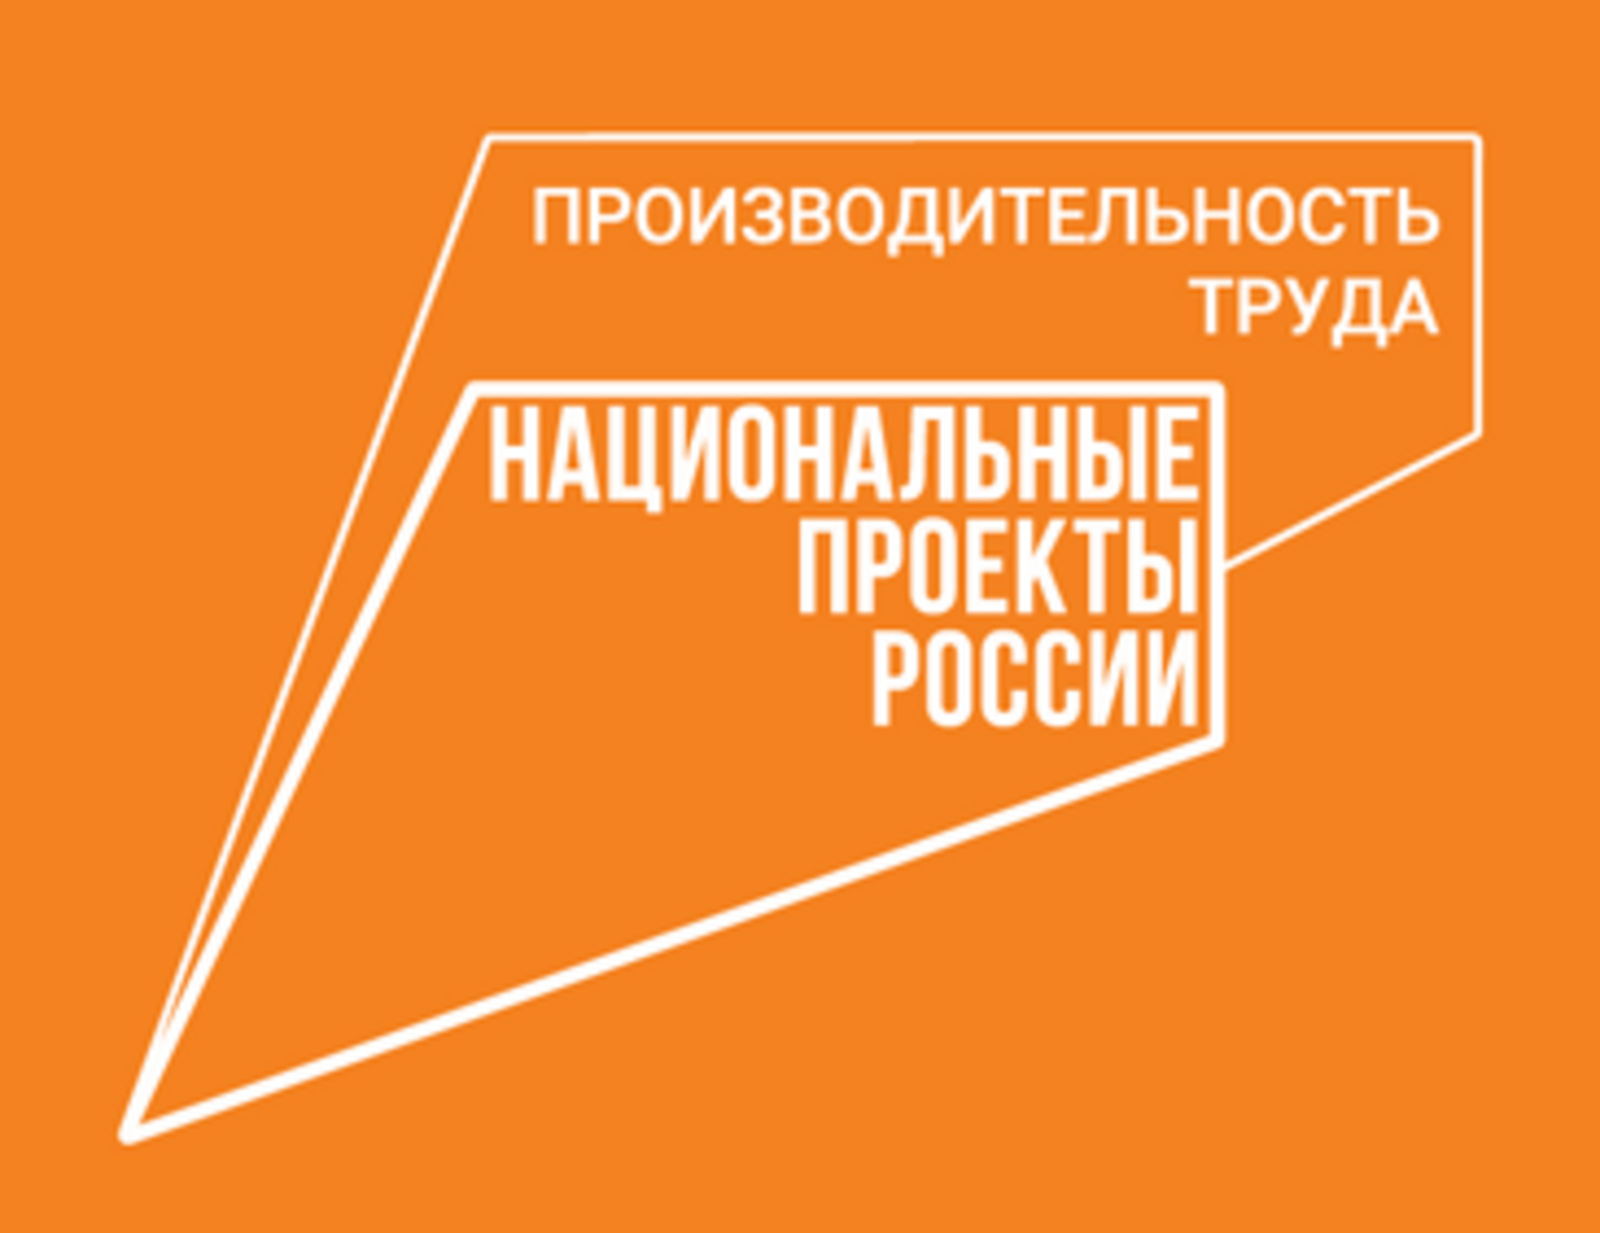 Башкортостан принял делегацию из Оренбурга для обмена опытом в рамках нацпроекта «Производительность труда»